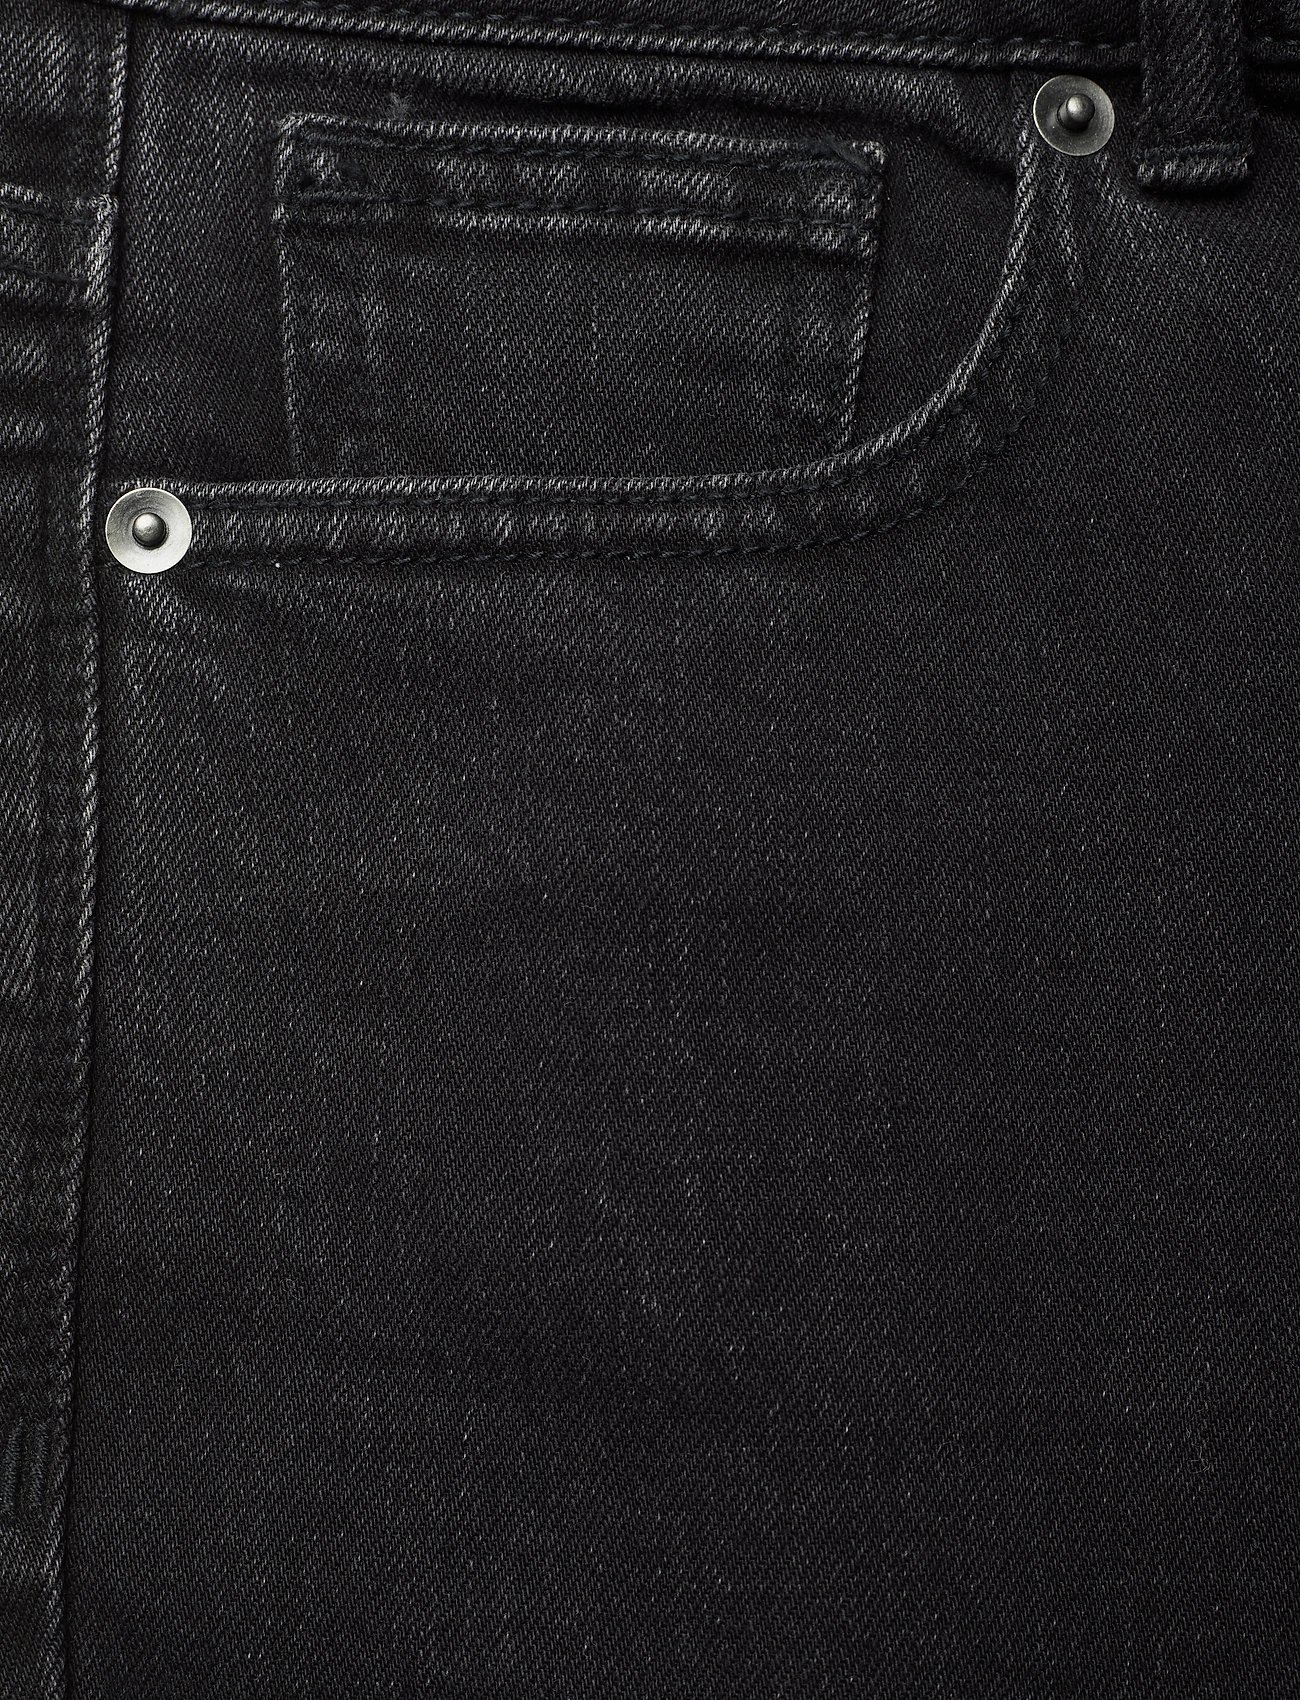 Stylein - KATIE DENIM - slim jeans - black - 3